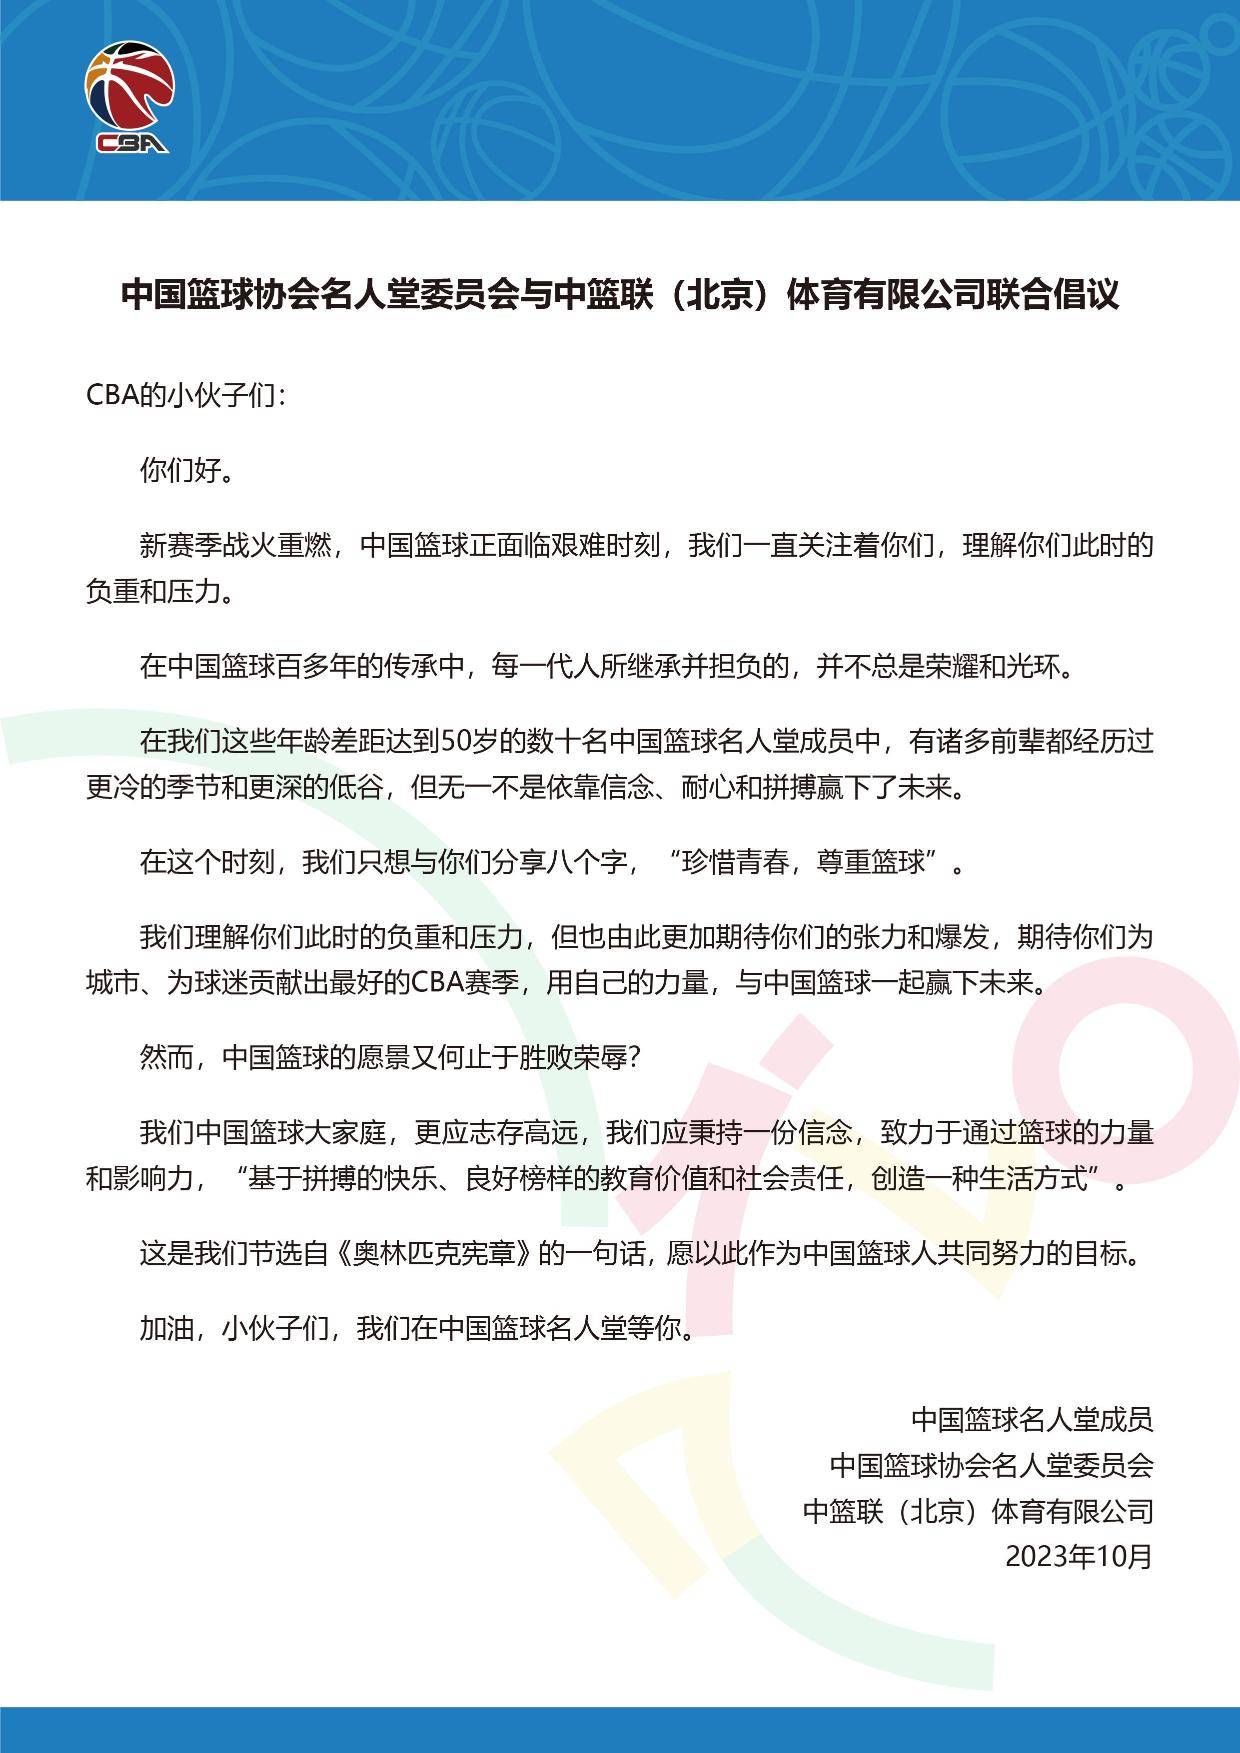 中国篮球名人堂和CBA公司激励运动员:好好地珍惜青春十分尊重篮球